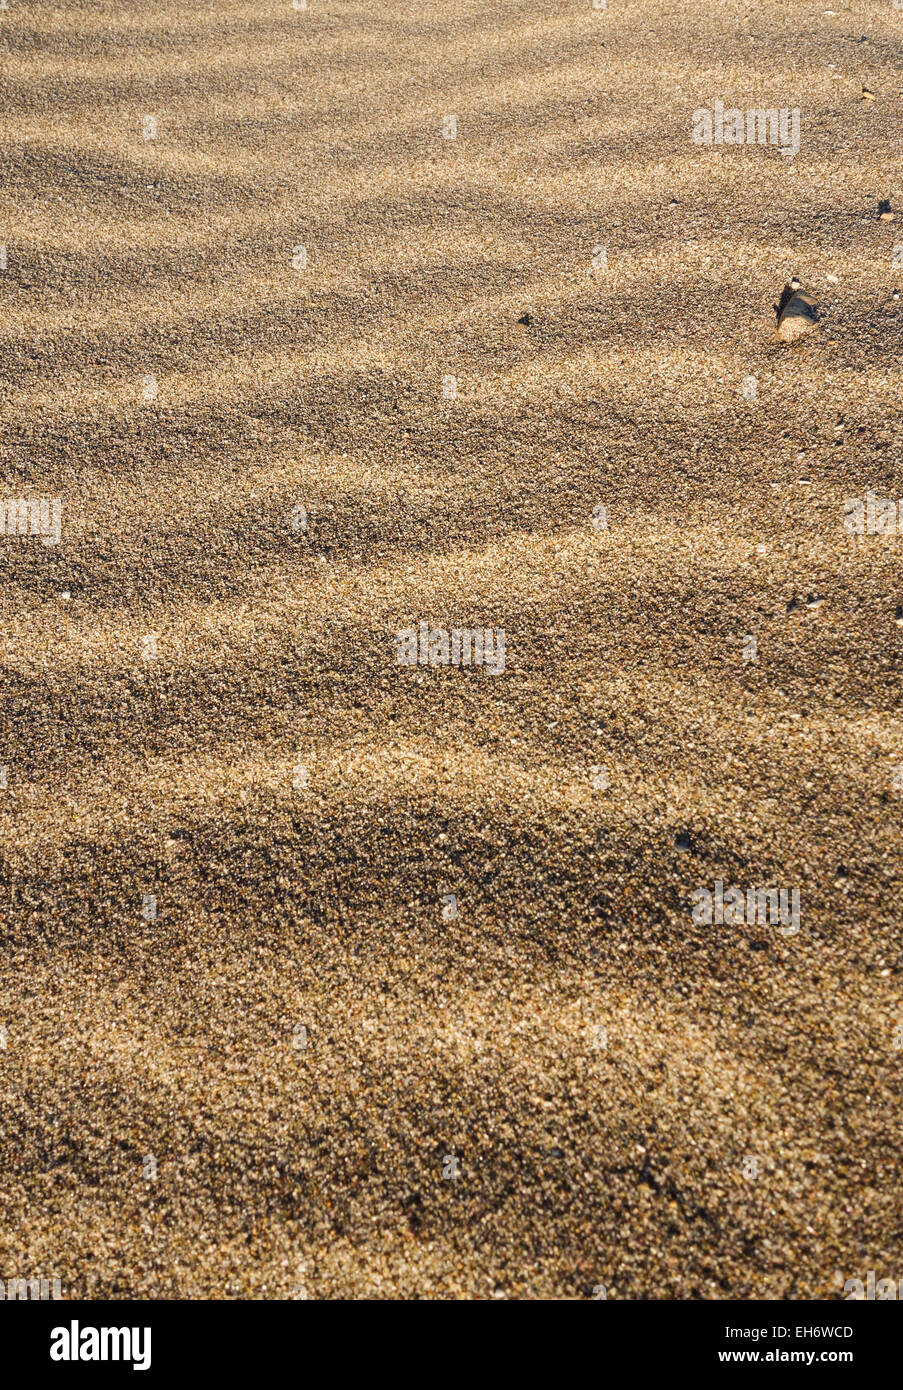 Les vagues de sable, des formes ondulatoires formé par le vent sur la plage, à l'Espagne. Banque D'Images